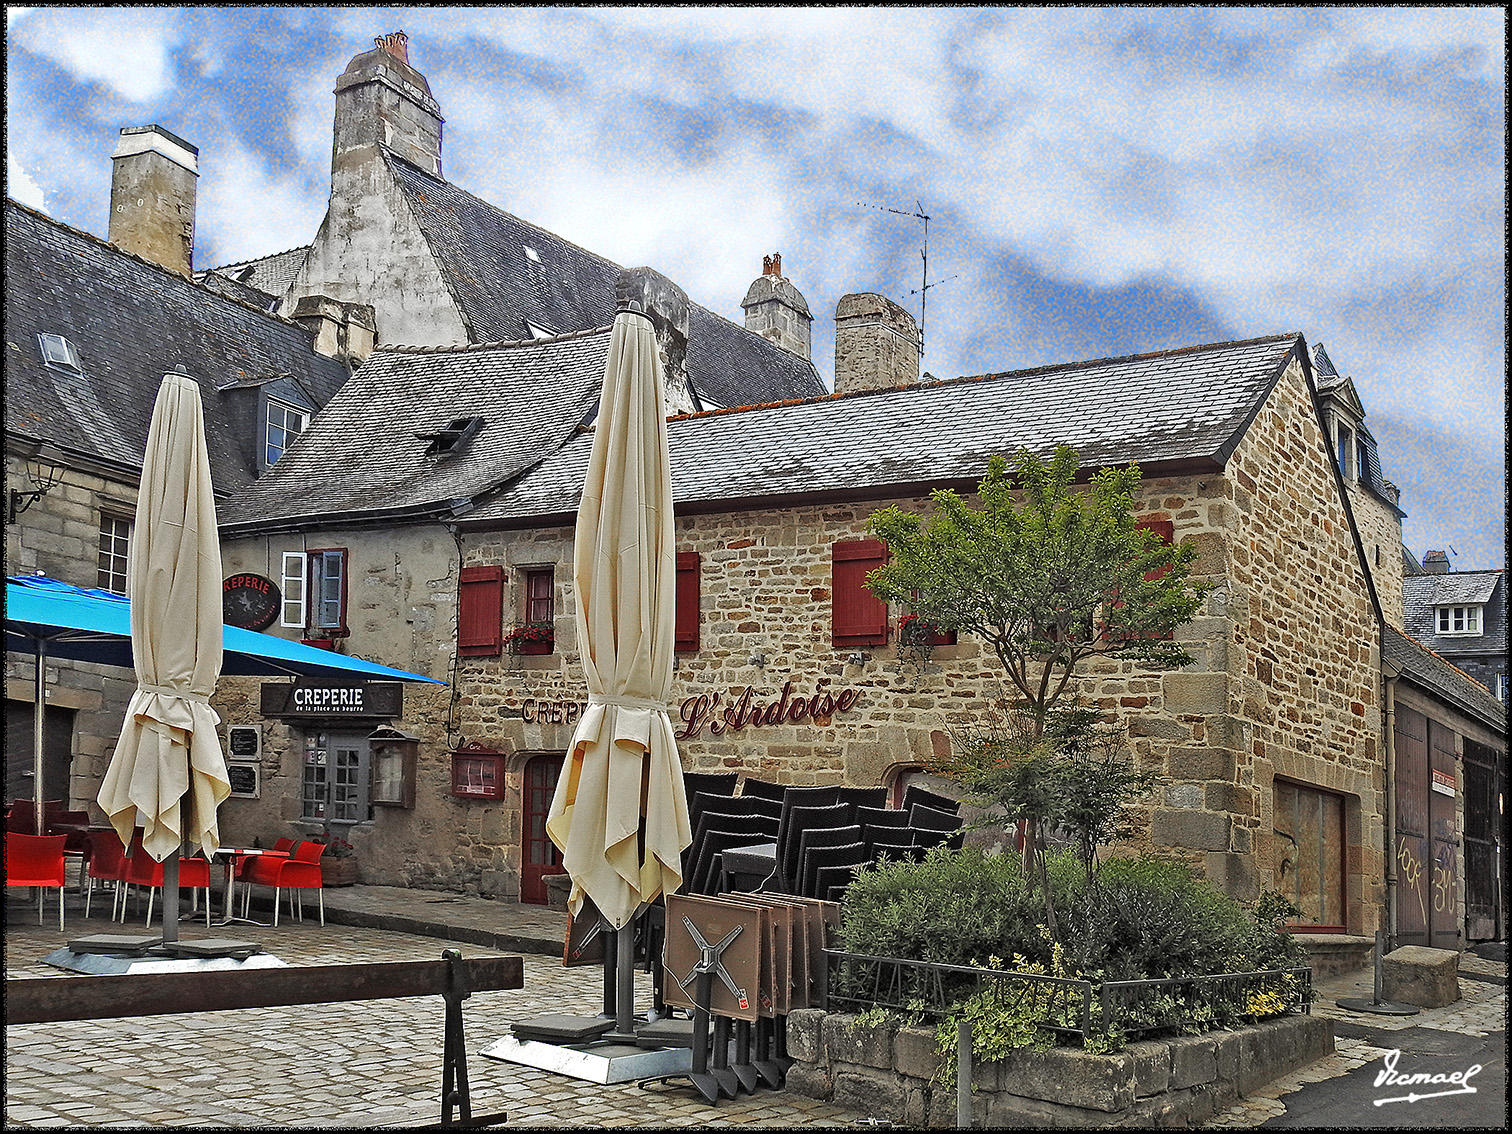 Foto: 170507-188 QUIMPER - Quimper (Brittany), Francia